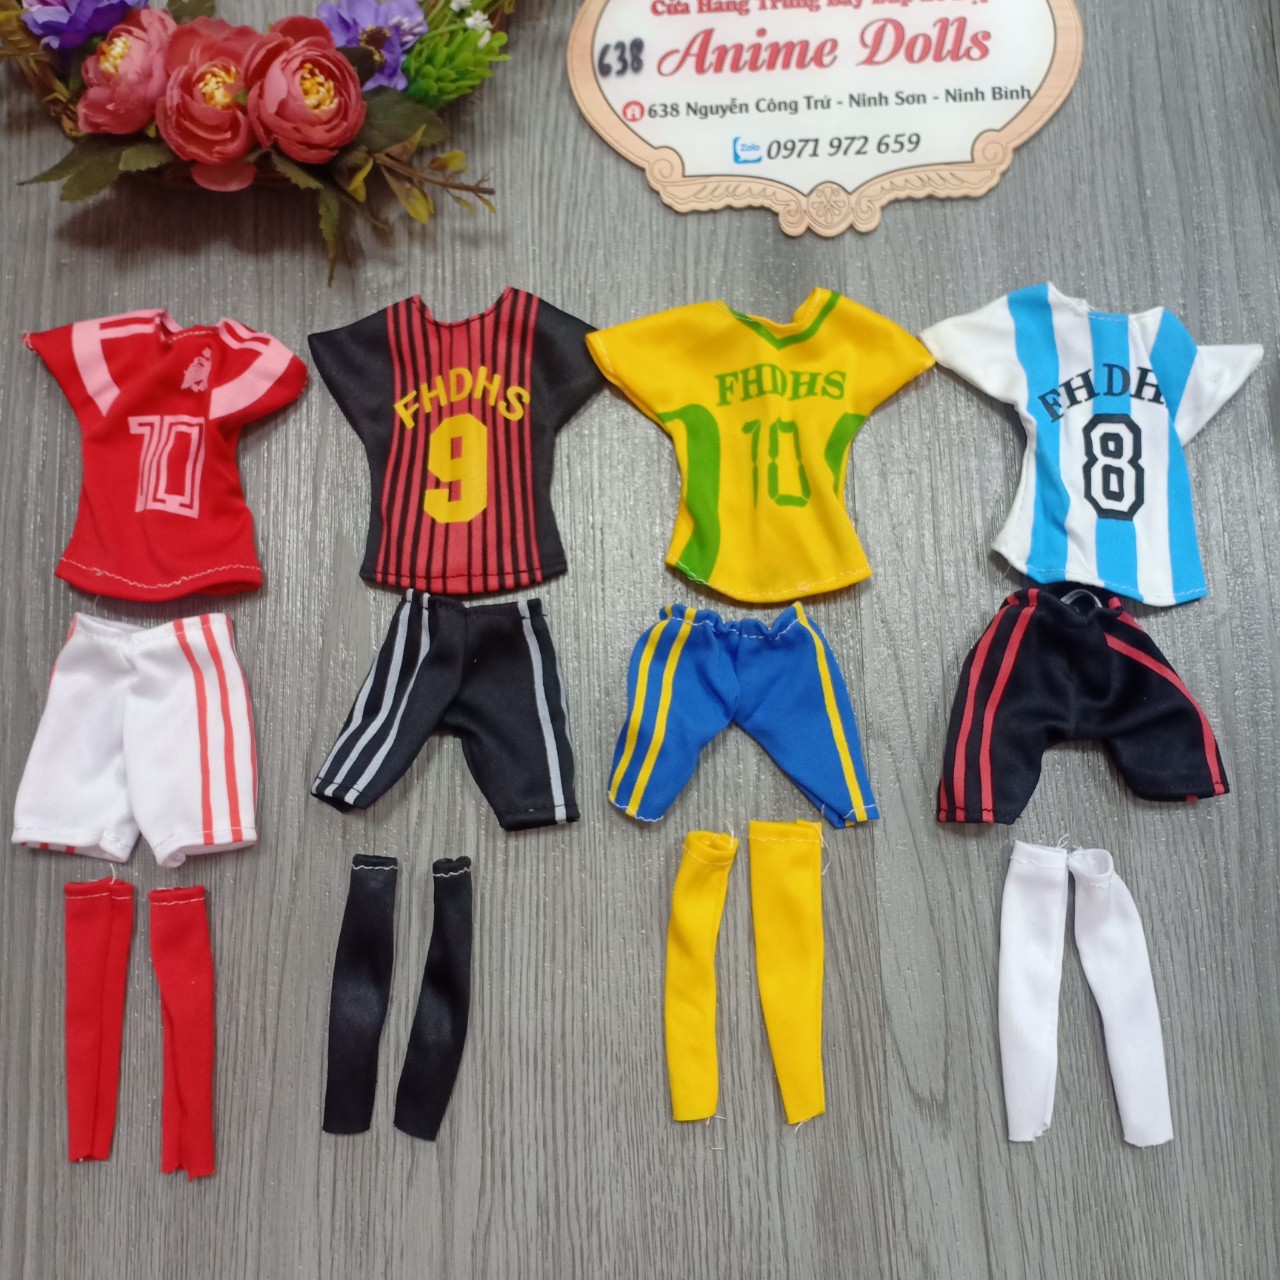 Các bộ đồ thể thao bóng đá cho búp bê nam và búp bê nữ 30cm